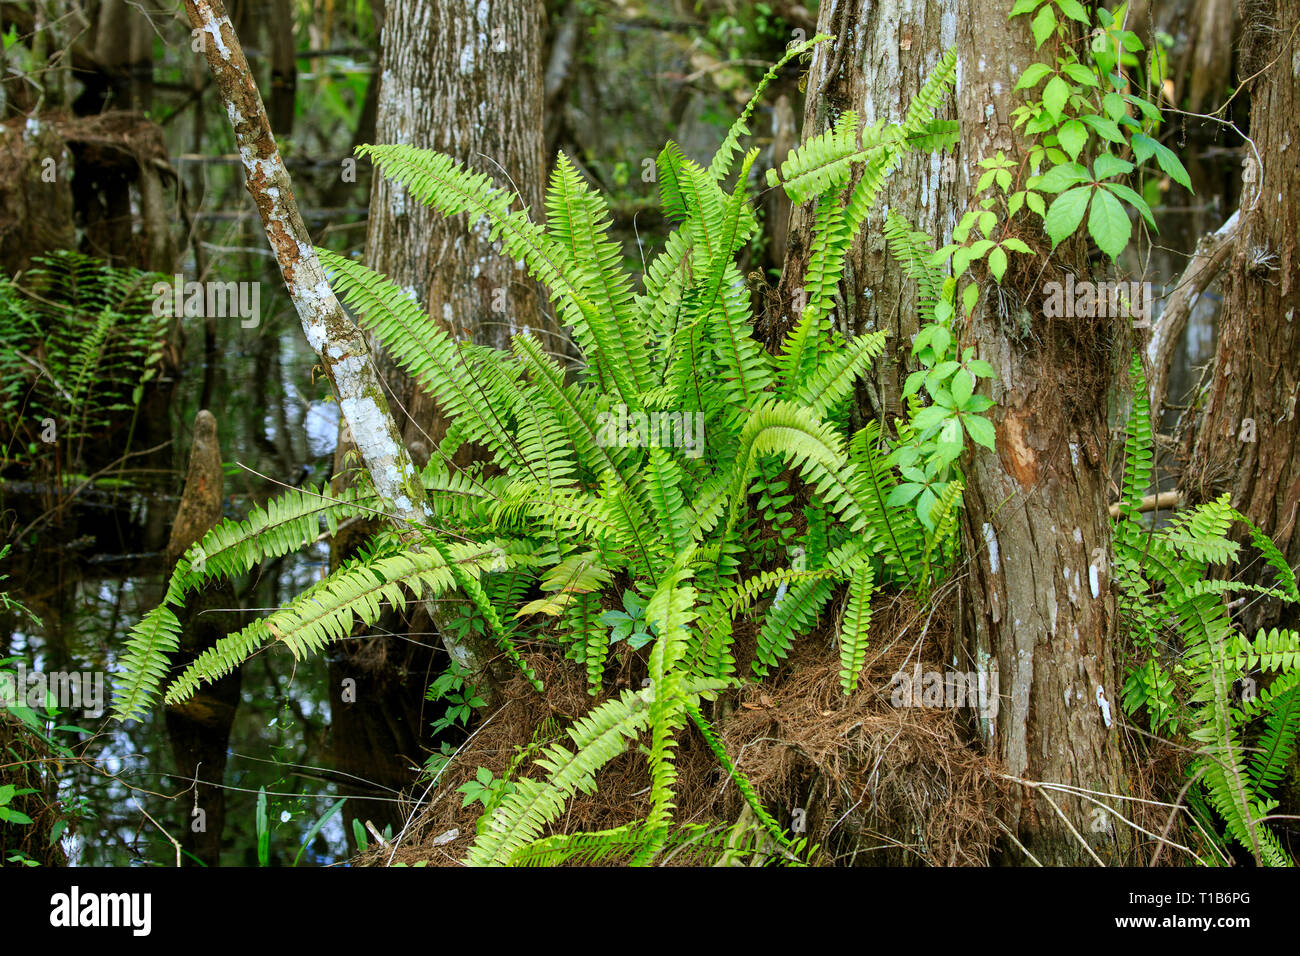 Boston fern (Nephrolepis exaltata) growing wild in Florida Stock Photo